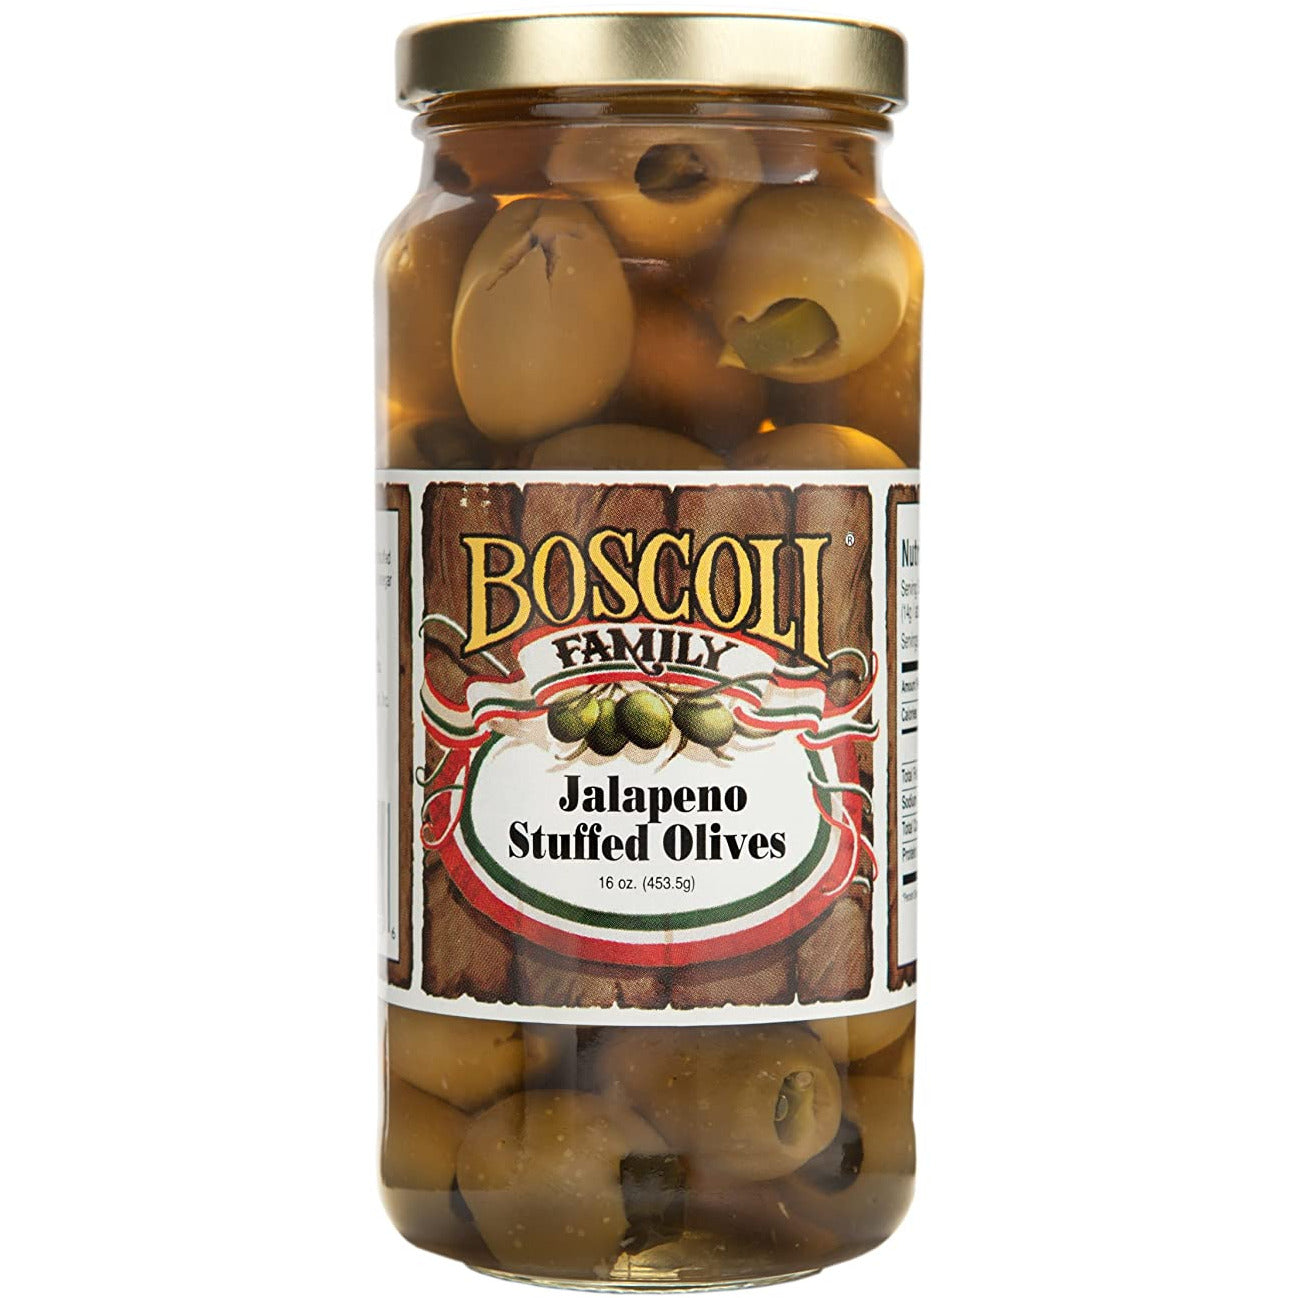 Boscoli Jalapeno Stuffed Olives, 16oz